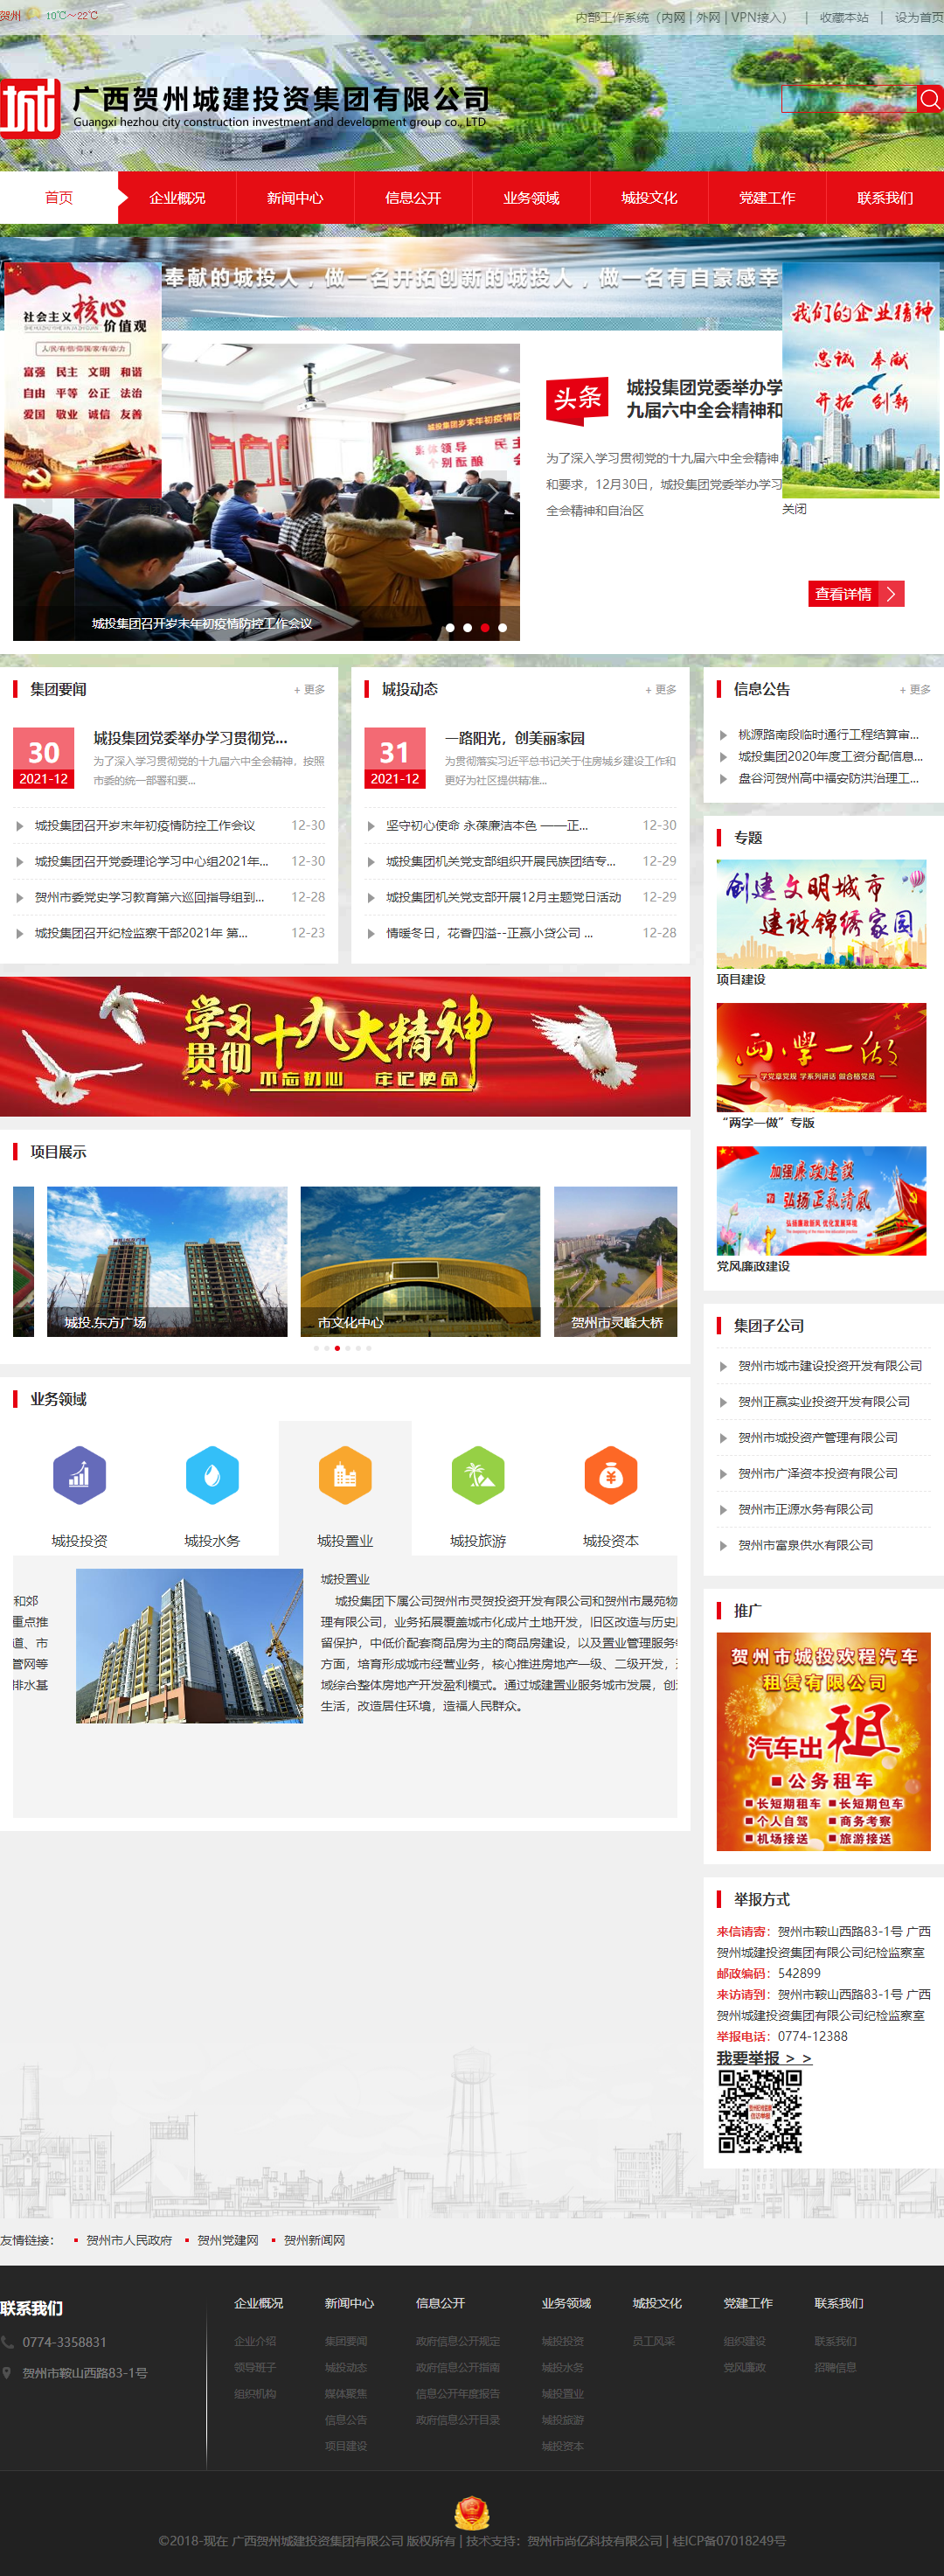 广西贺州城建投资集团有限公司网站案例